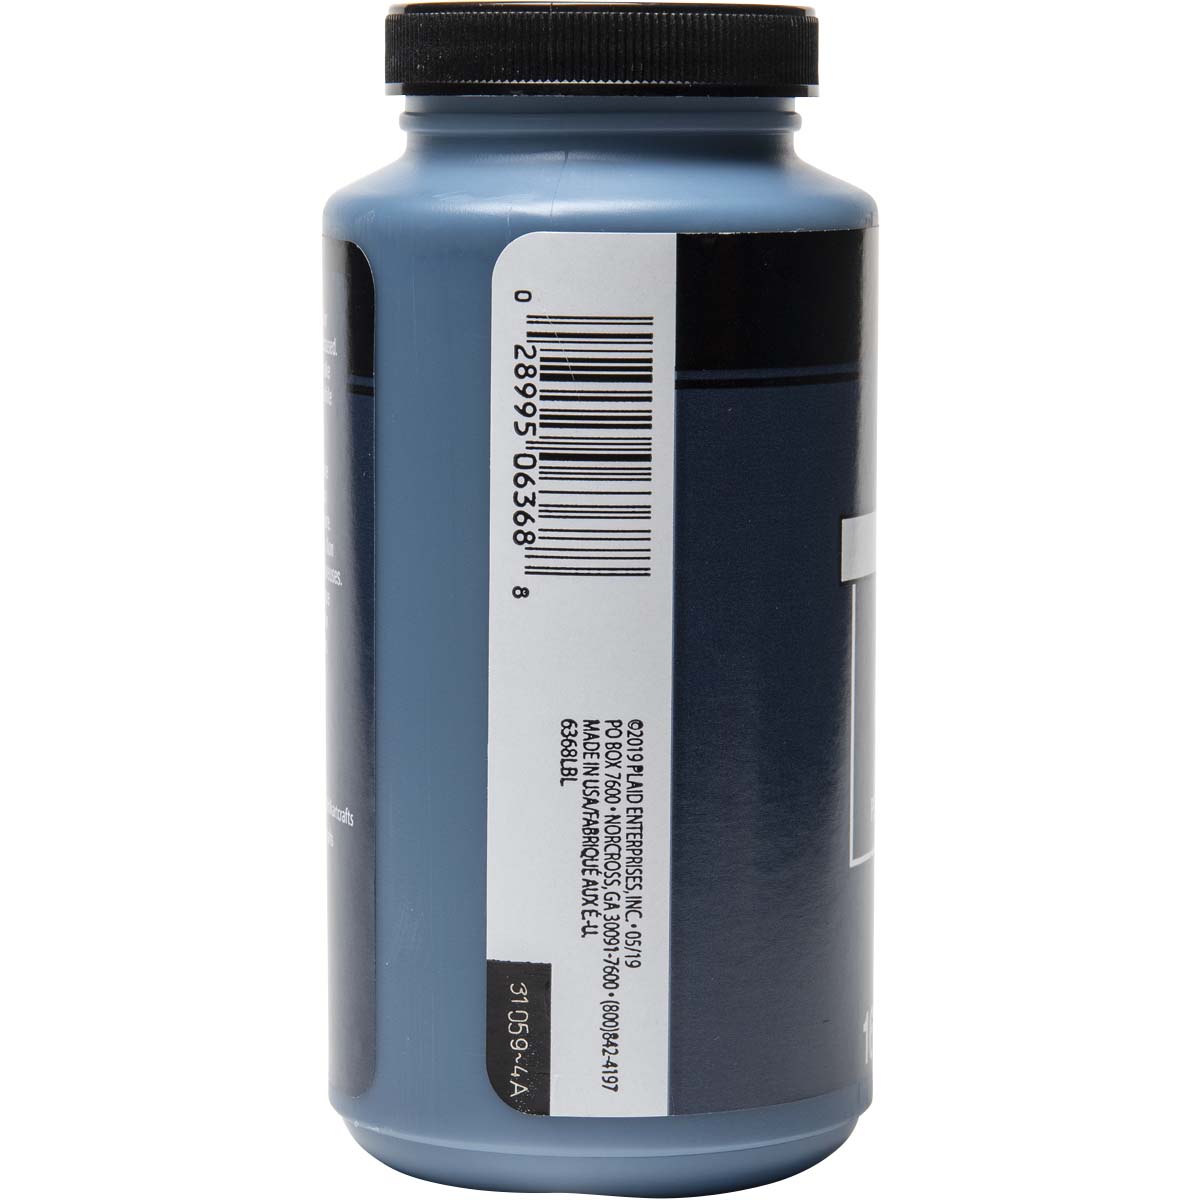 FolkArt ® Acrylic Colors - Navy Blue, 16 oz. - 6368